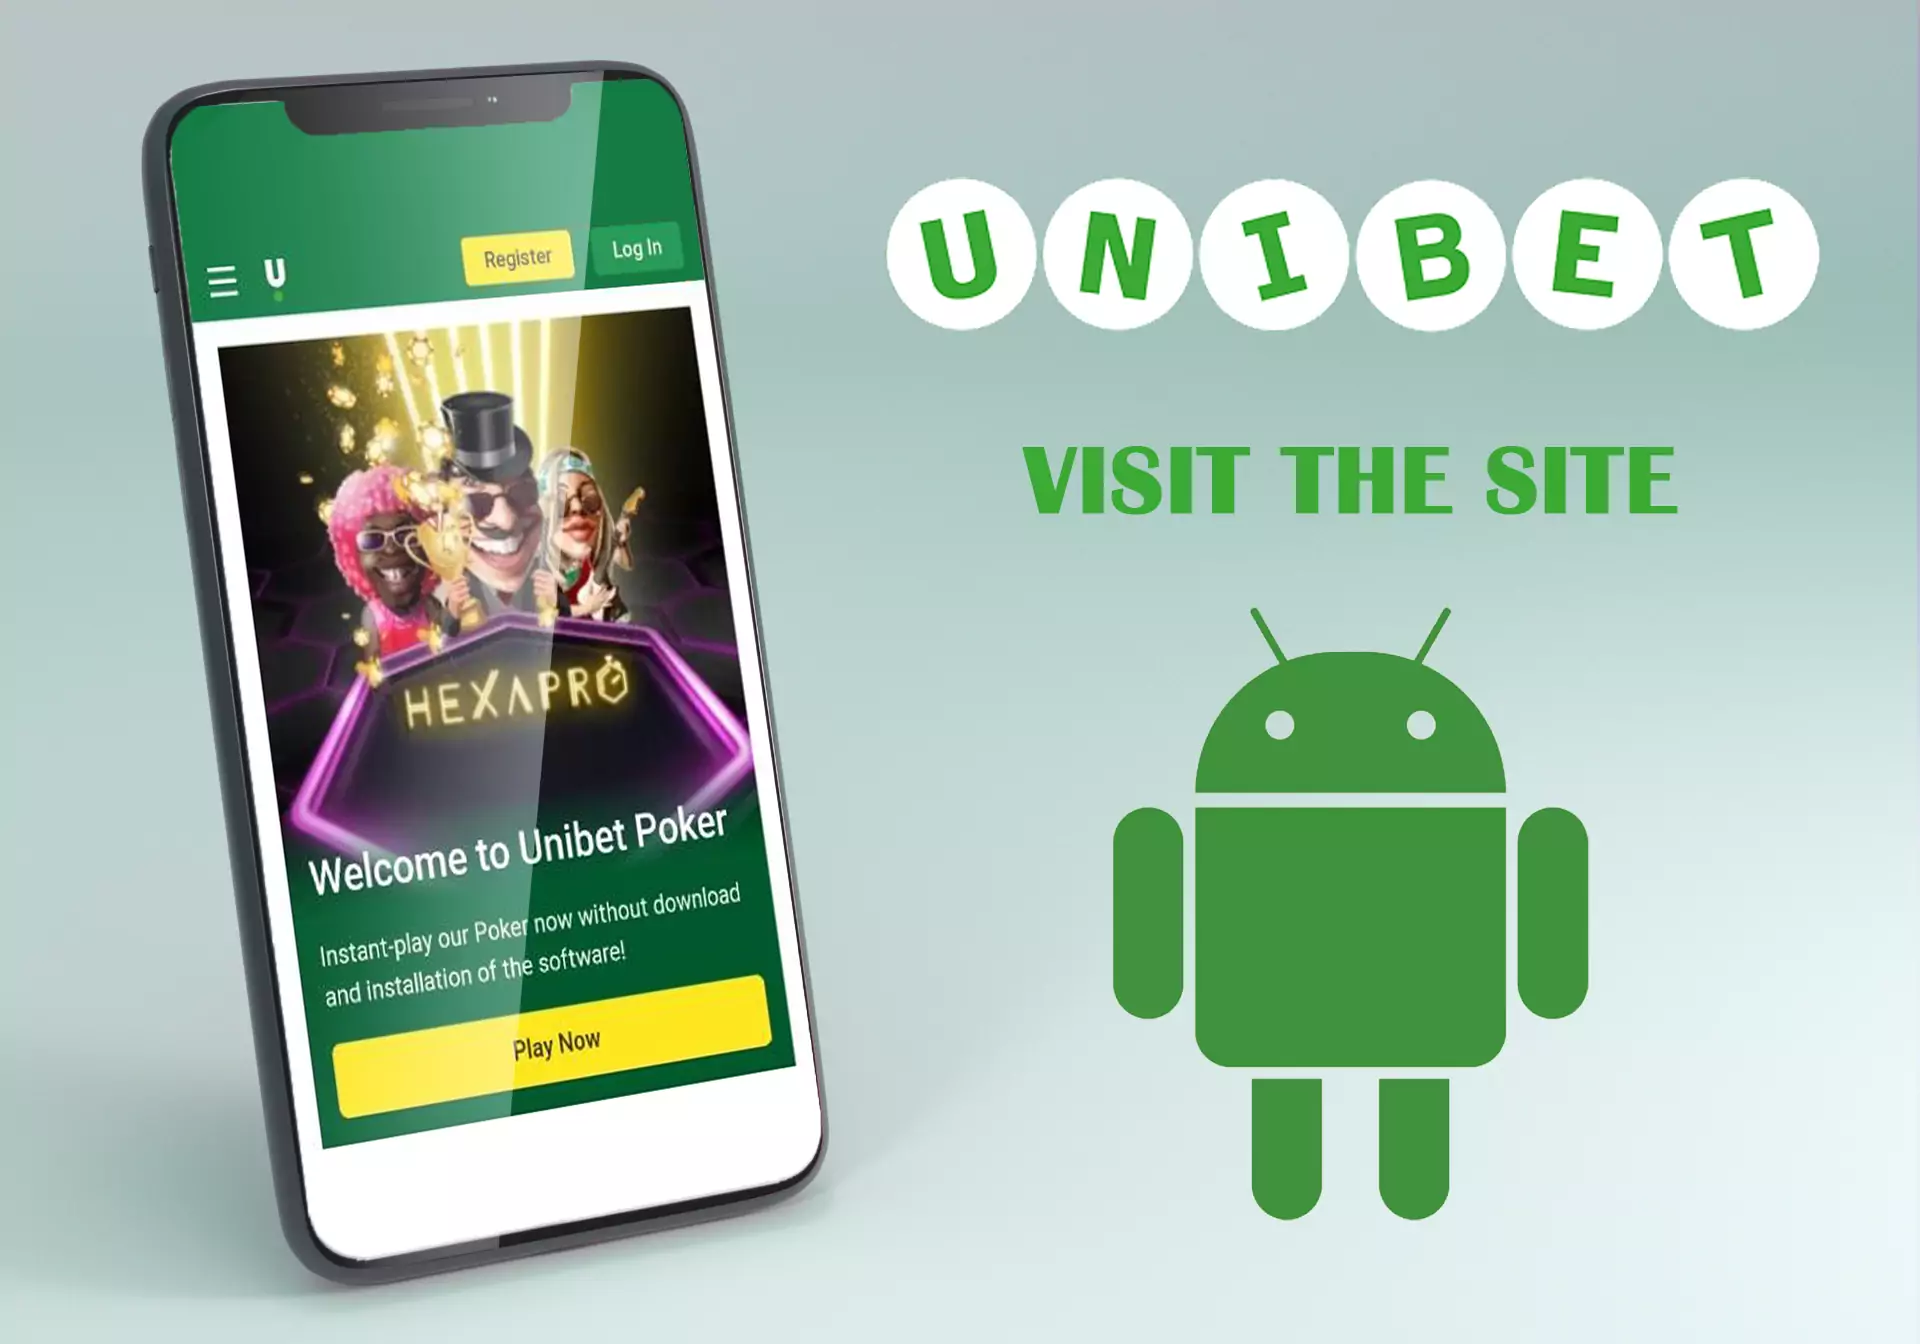 Open the official website of Unibet.